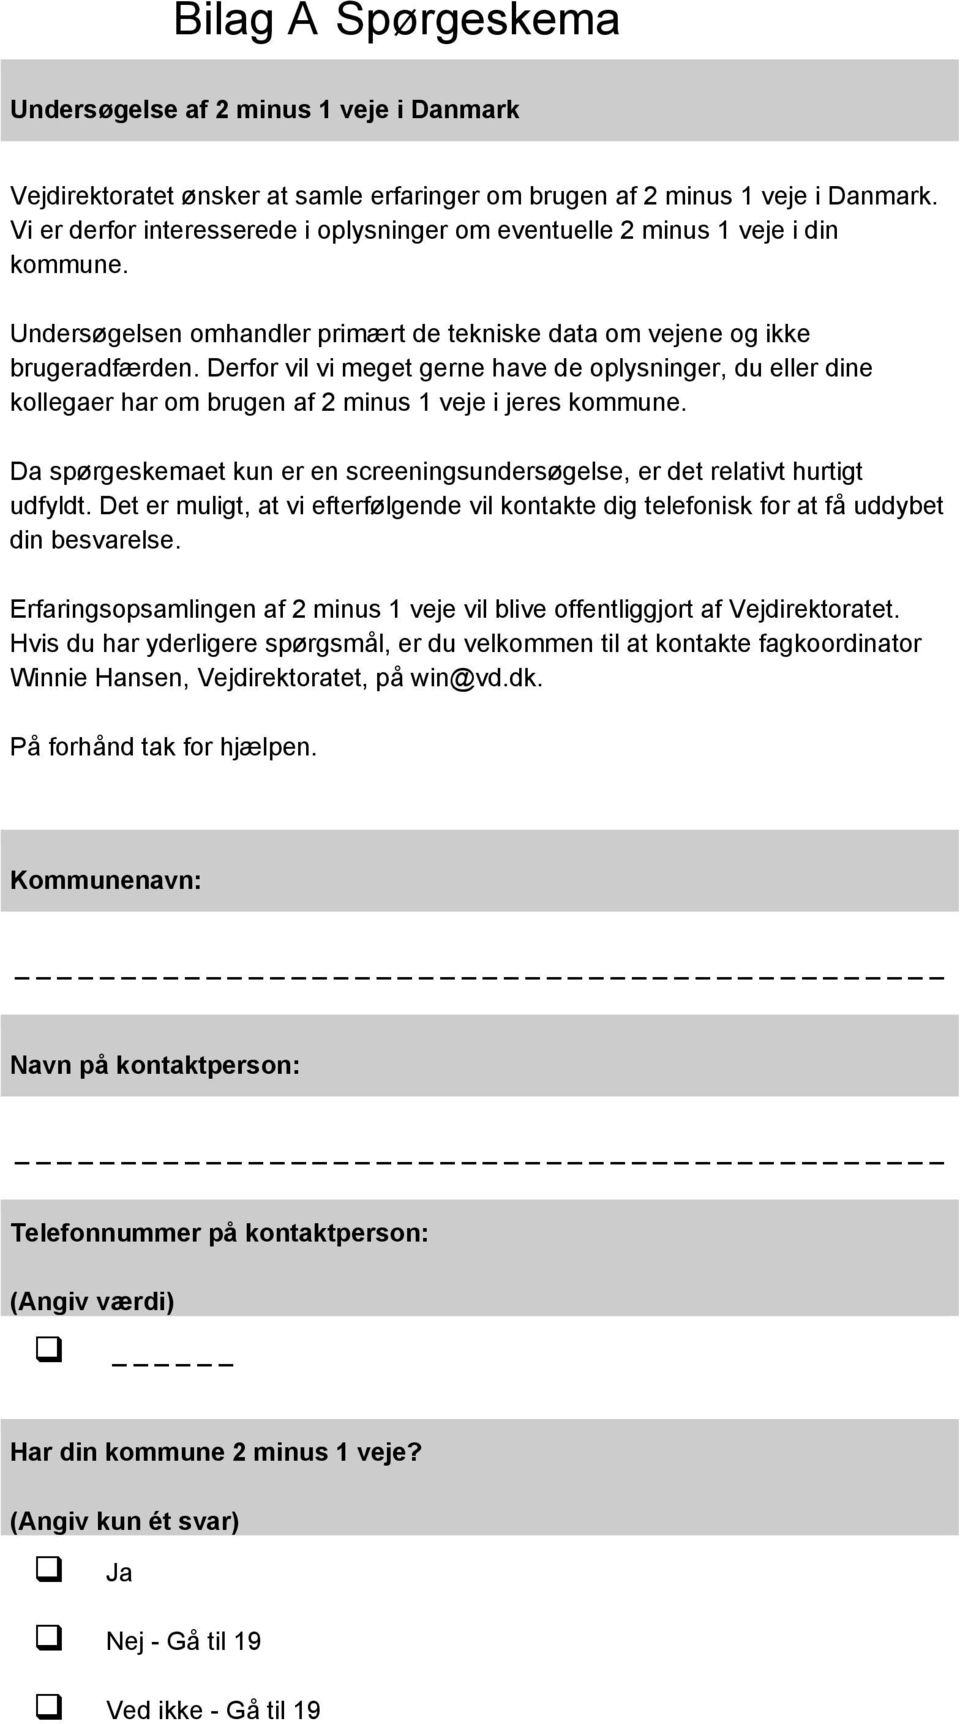 Bilag A Spørgeskema. Undersøgelse af 2 minus 1 veje i Danmark. På ...